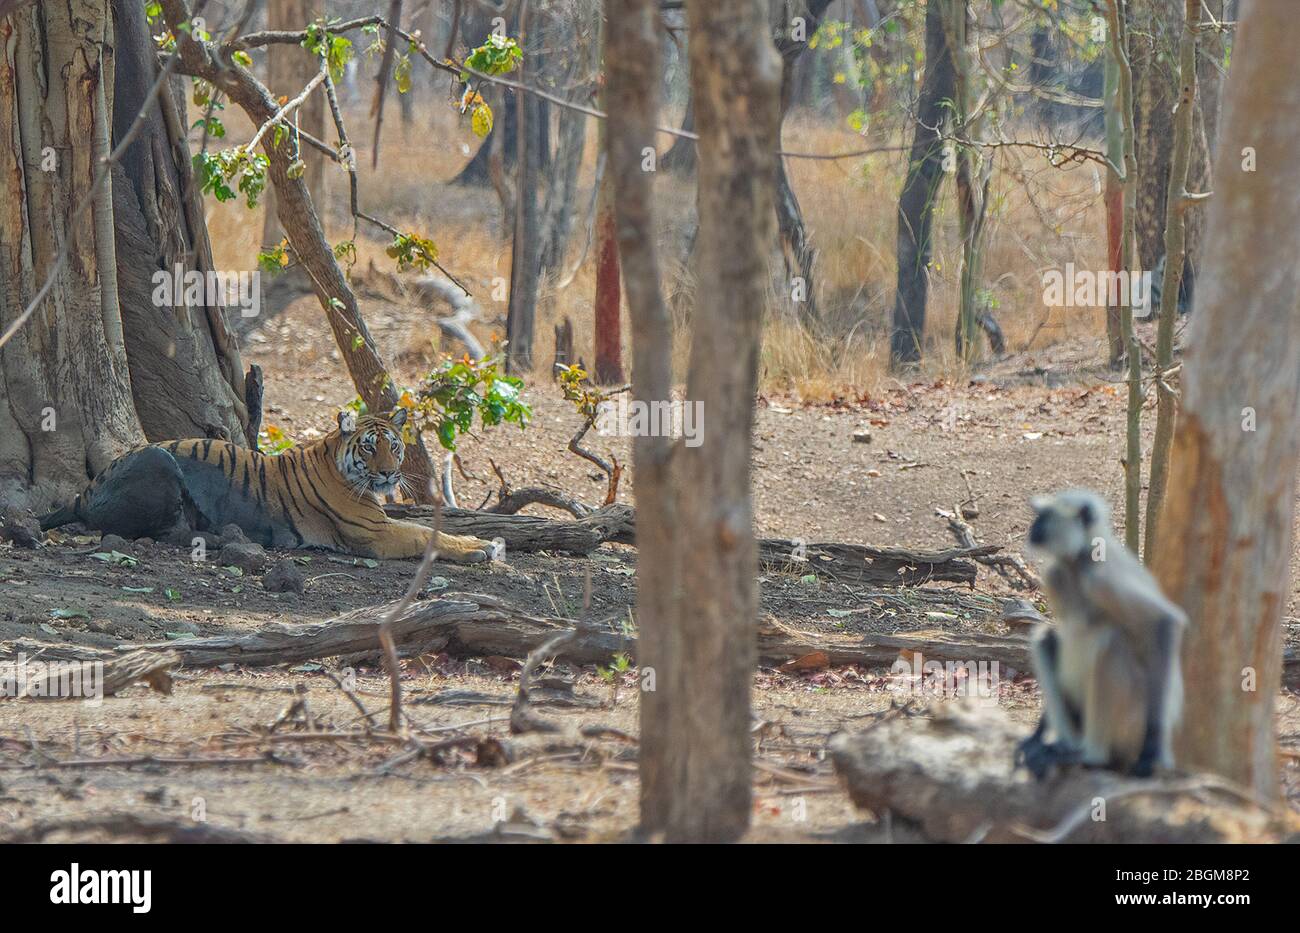 Tigre regardant Langur au parc national de Pench, Madhya Pradesh, Inde Banque D'Images